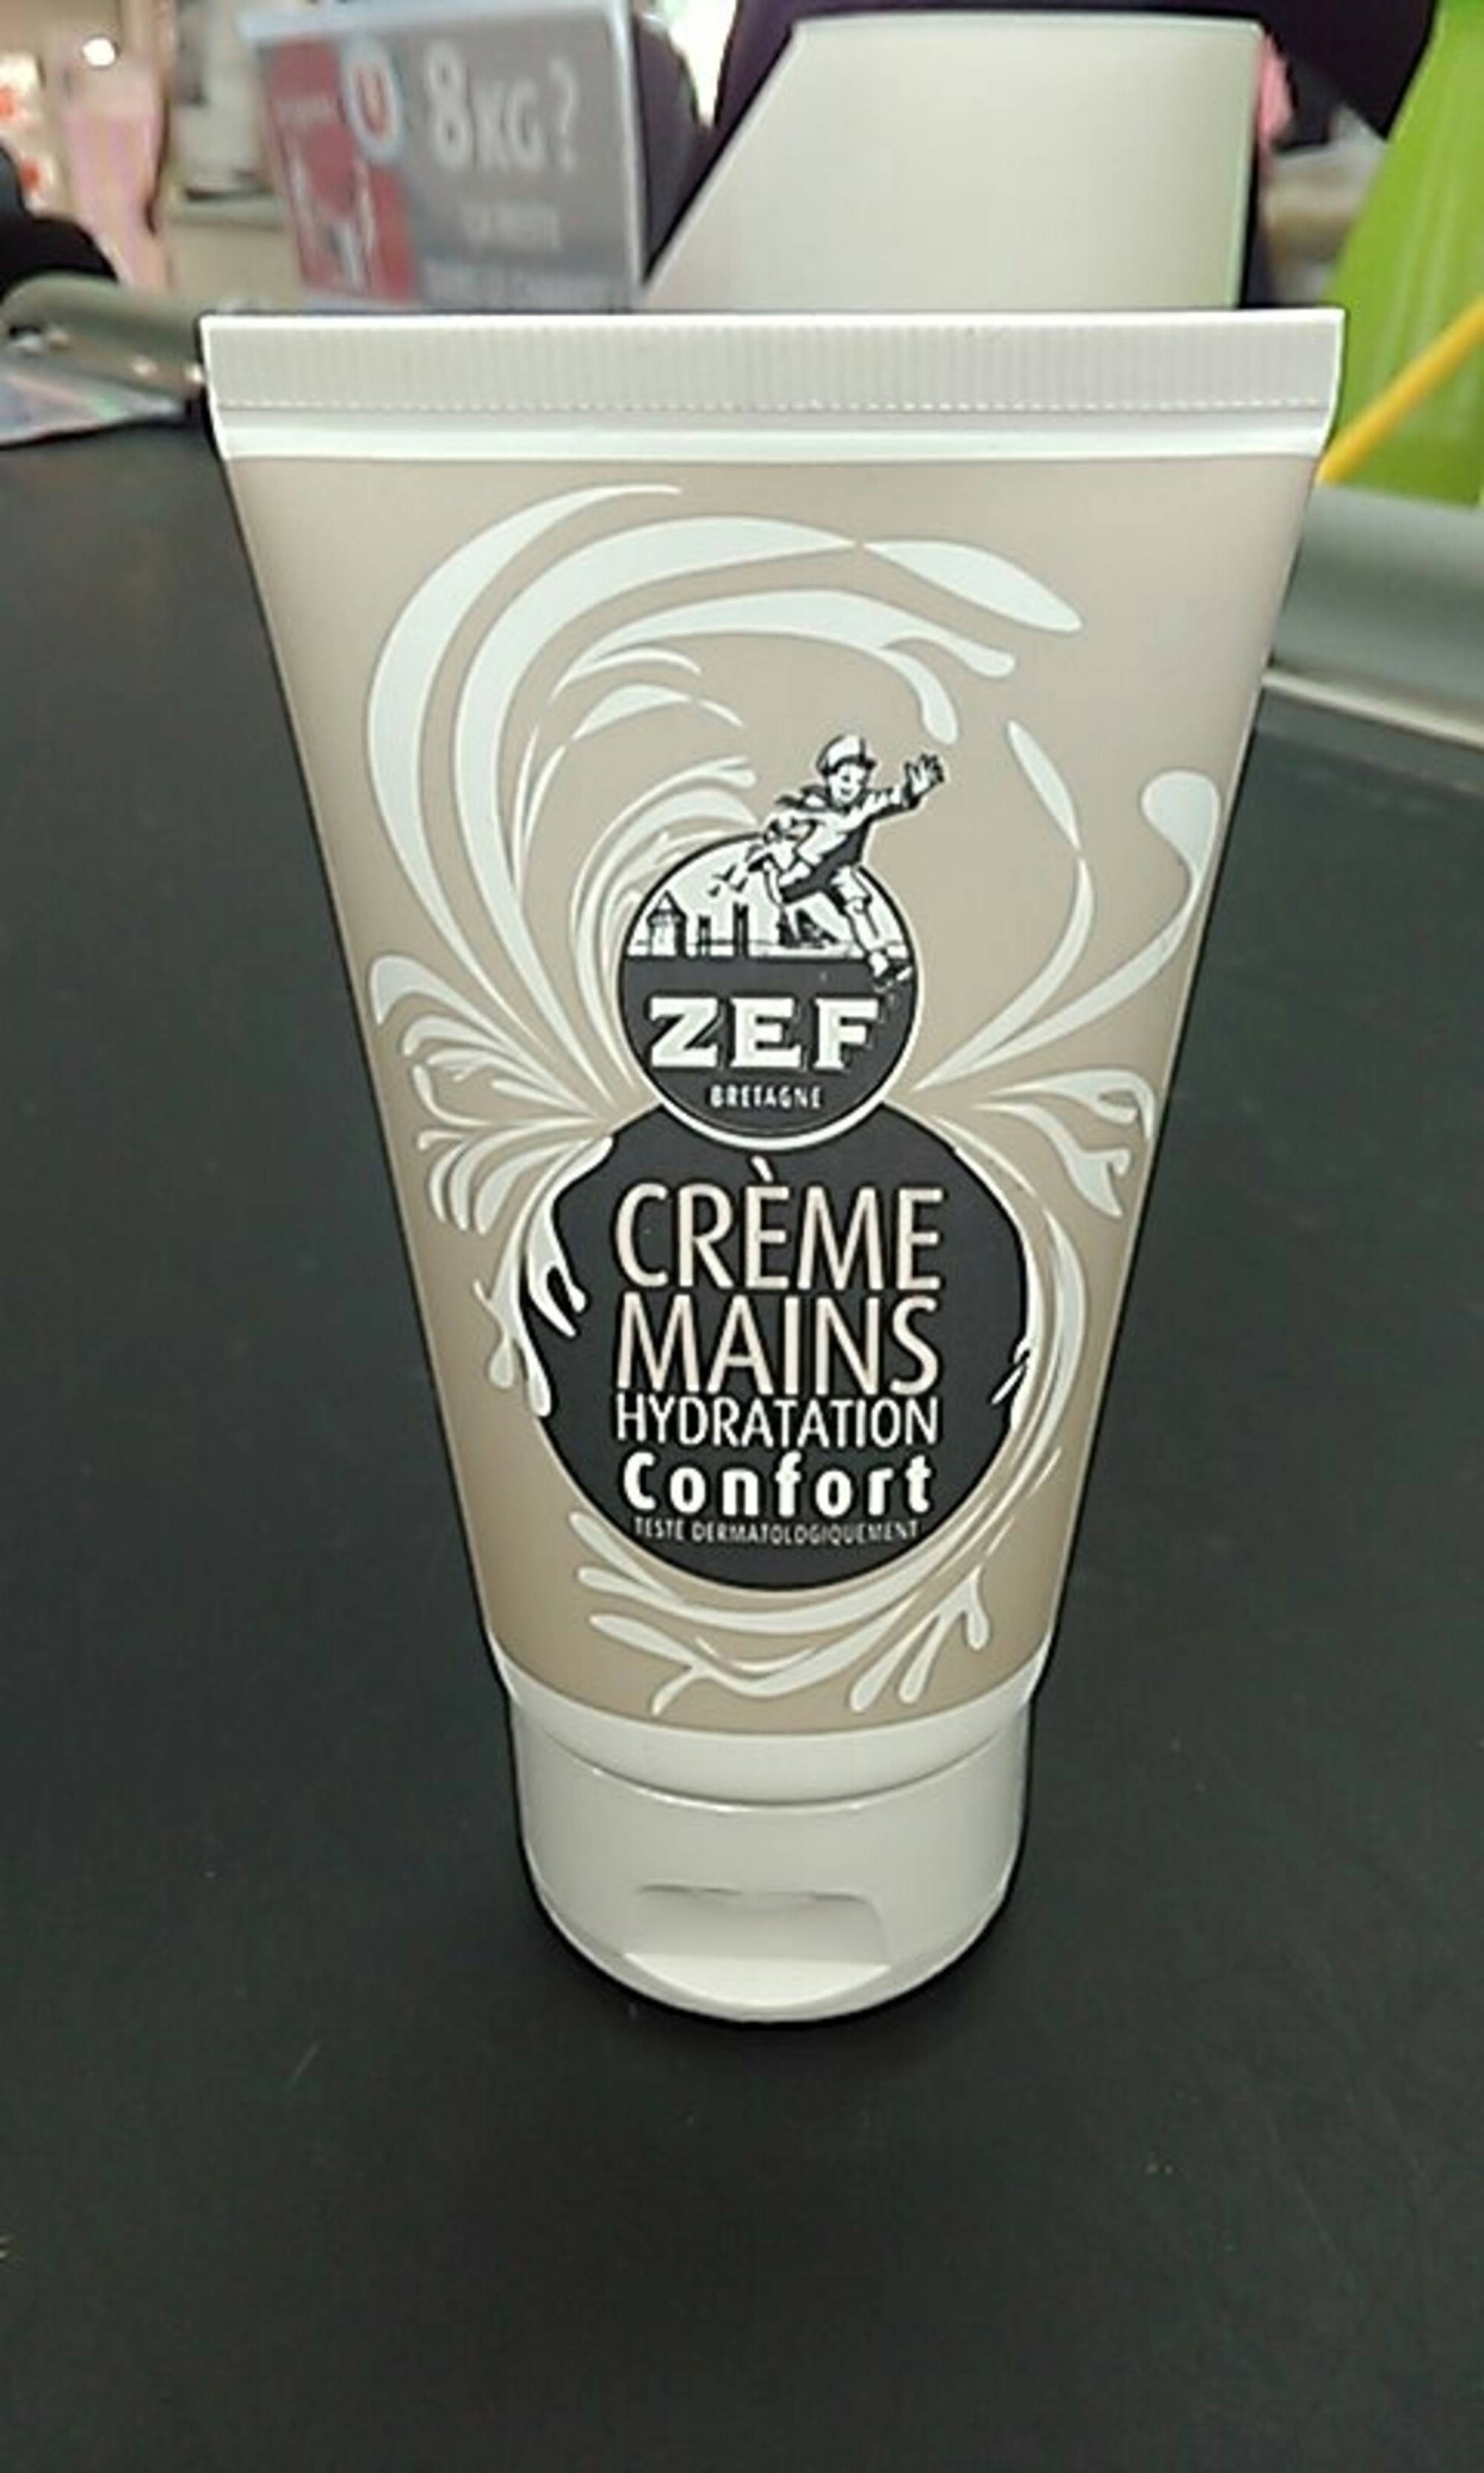 ZEF BRETAGNE - Crème mains hydratation confort